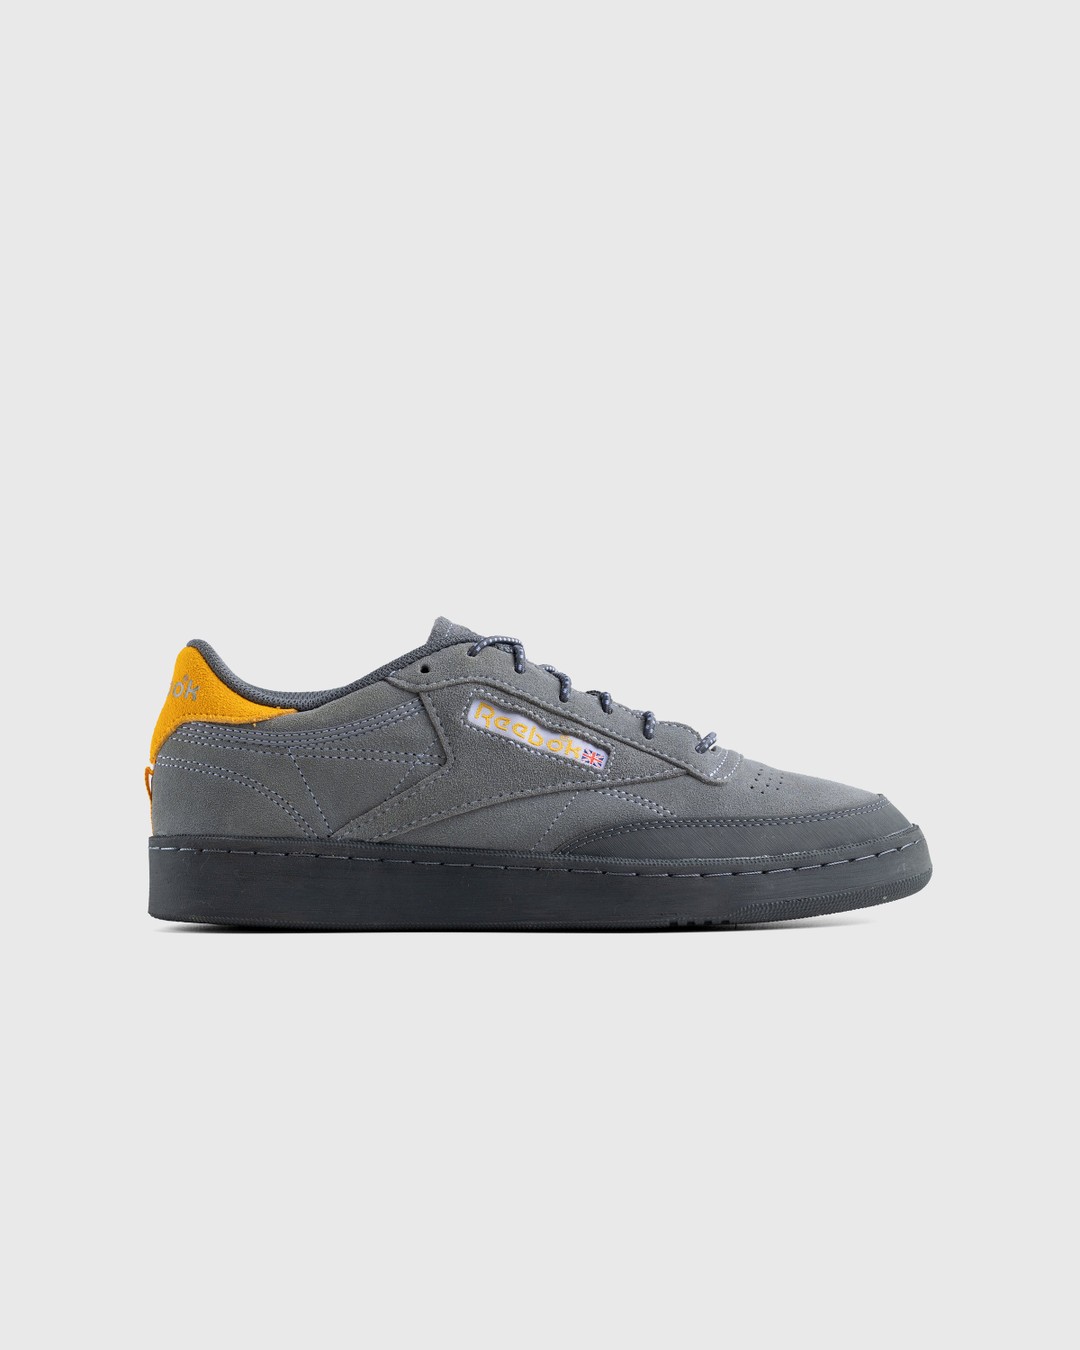 Reebok – Club C 85 Grey - Low Top Sneakers - Grey - Image 1